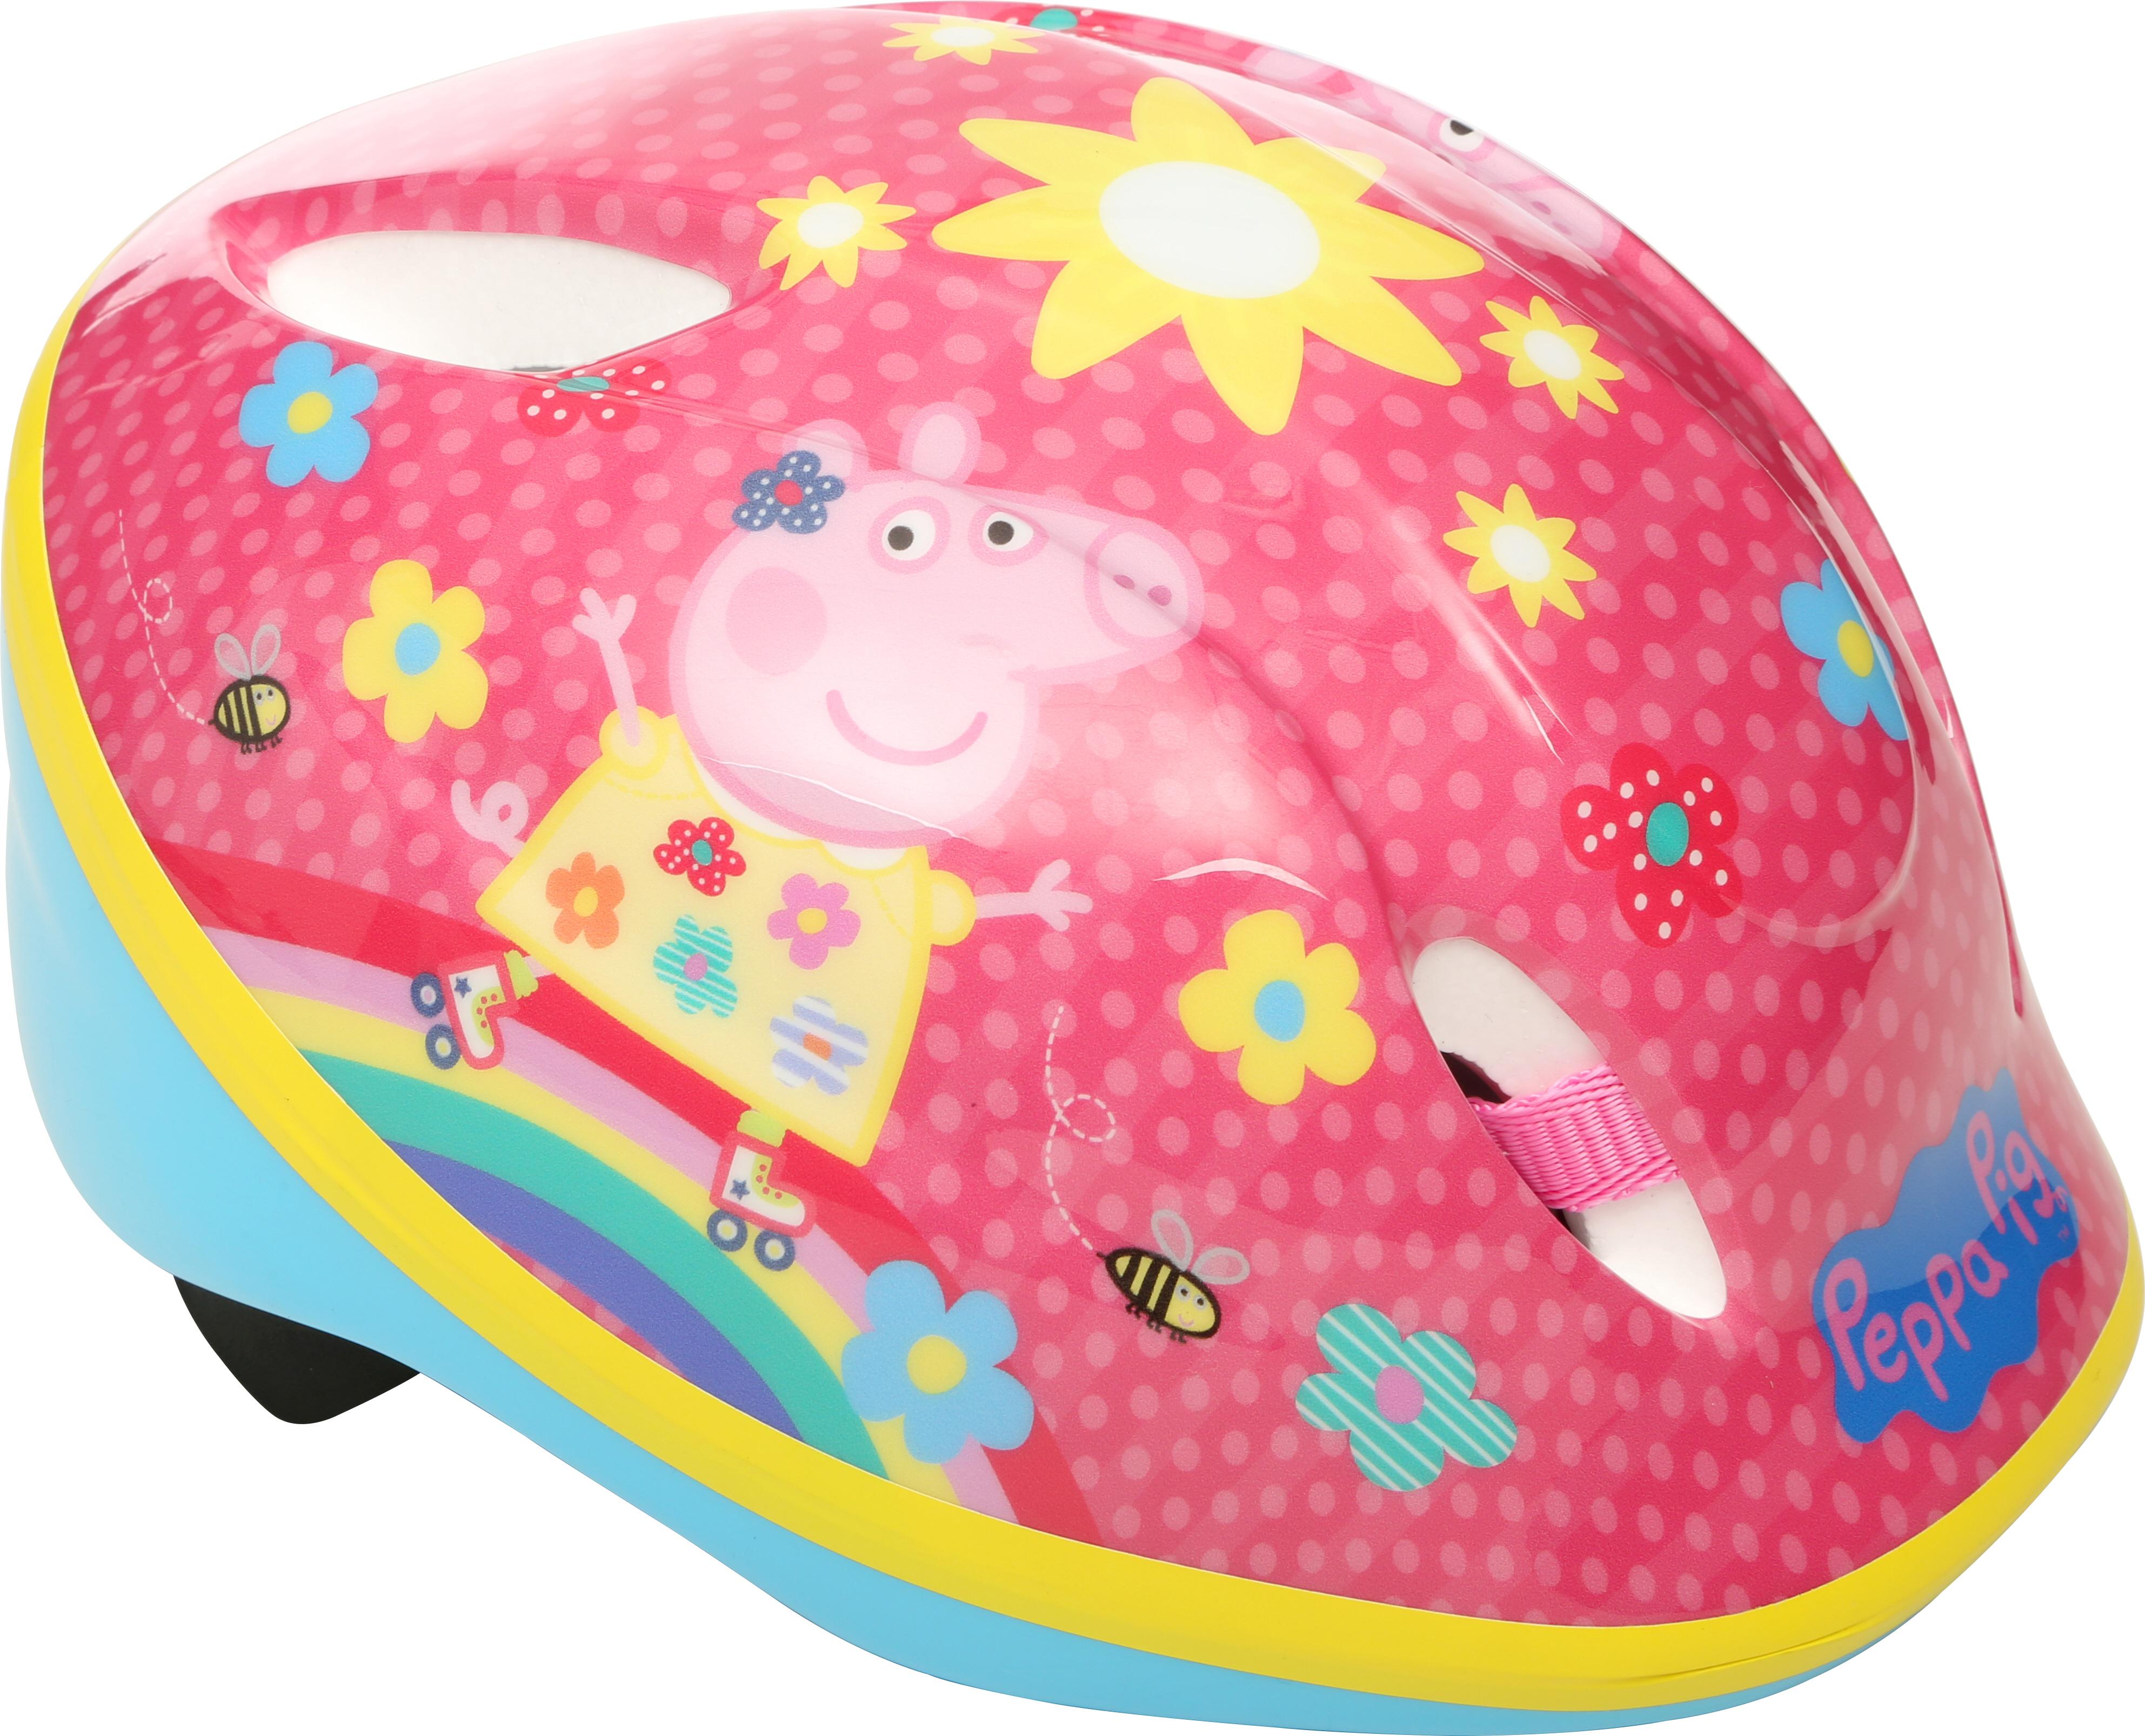 Peppa Pig Kids Bike Helmet (48-52Cm)